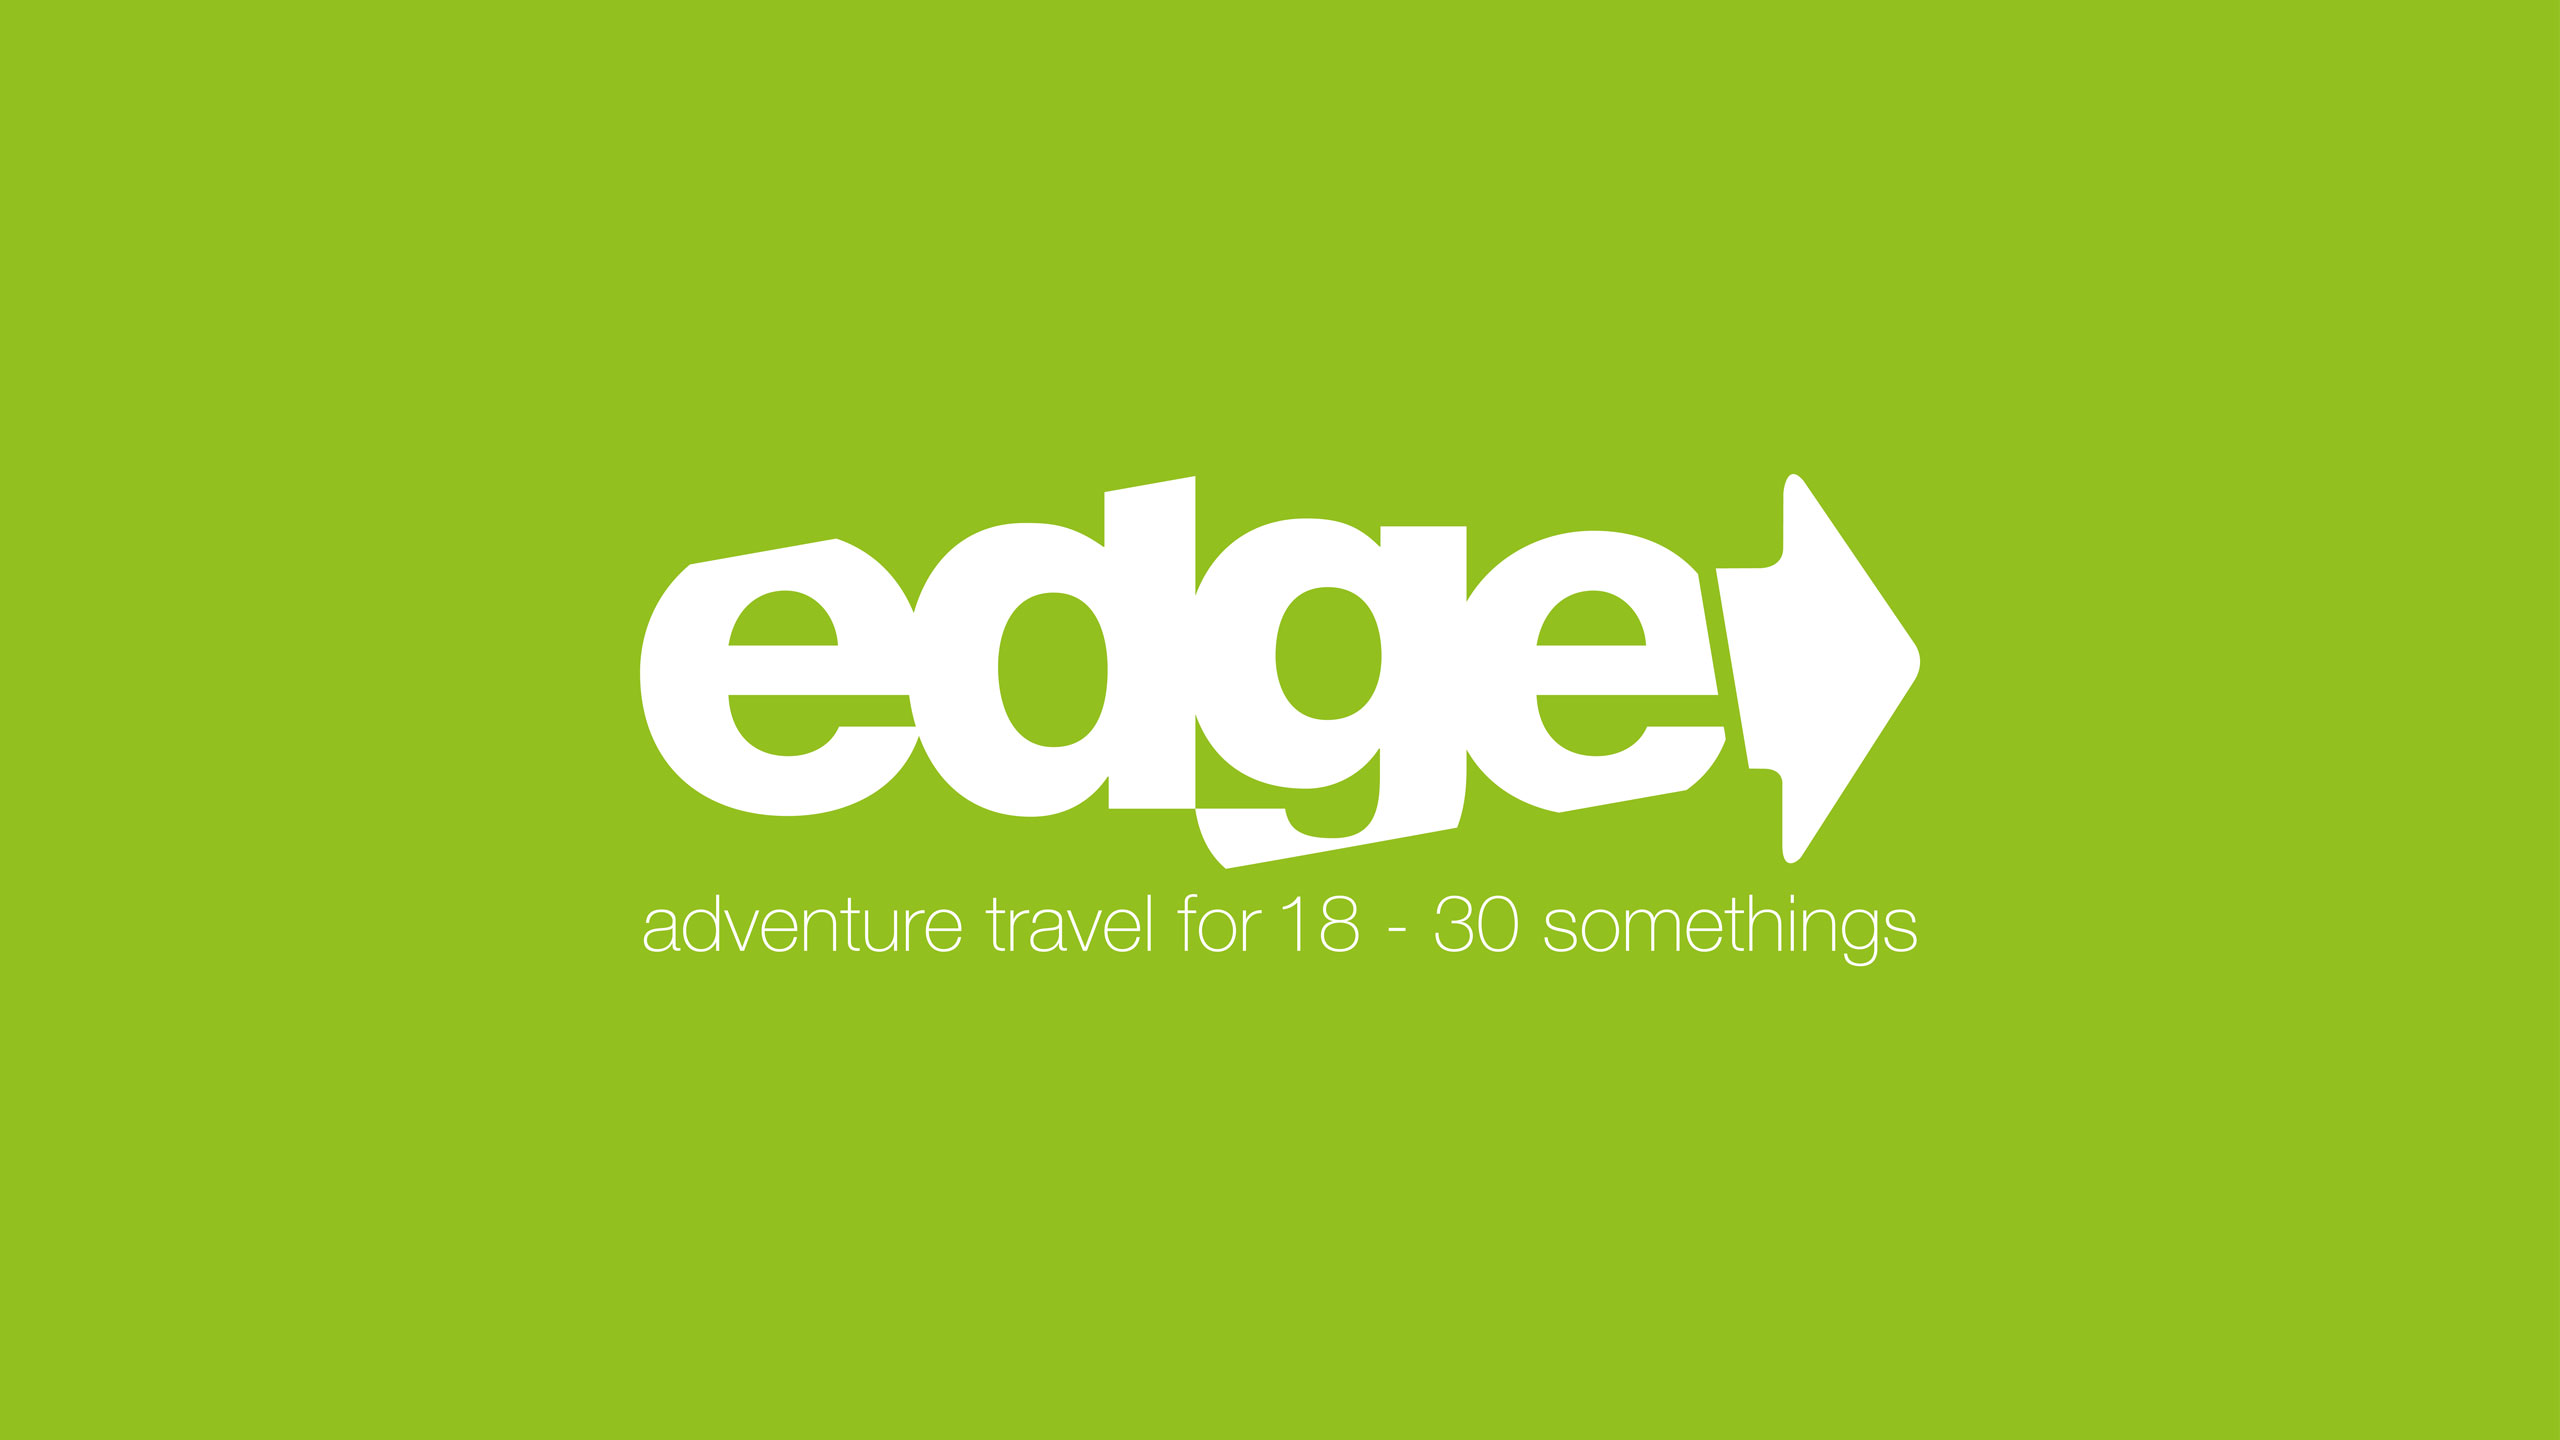 18-30 travel logo design edge adventure